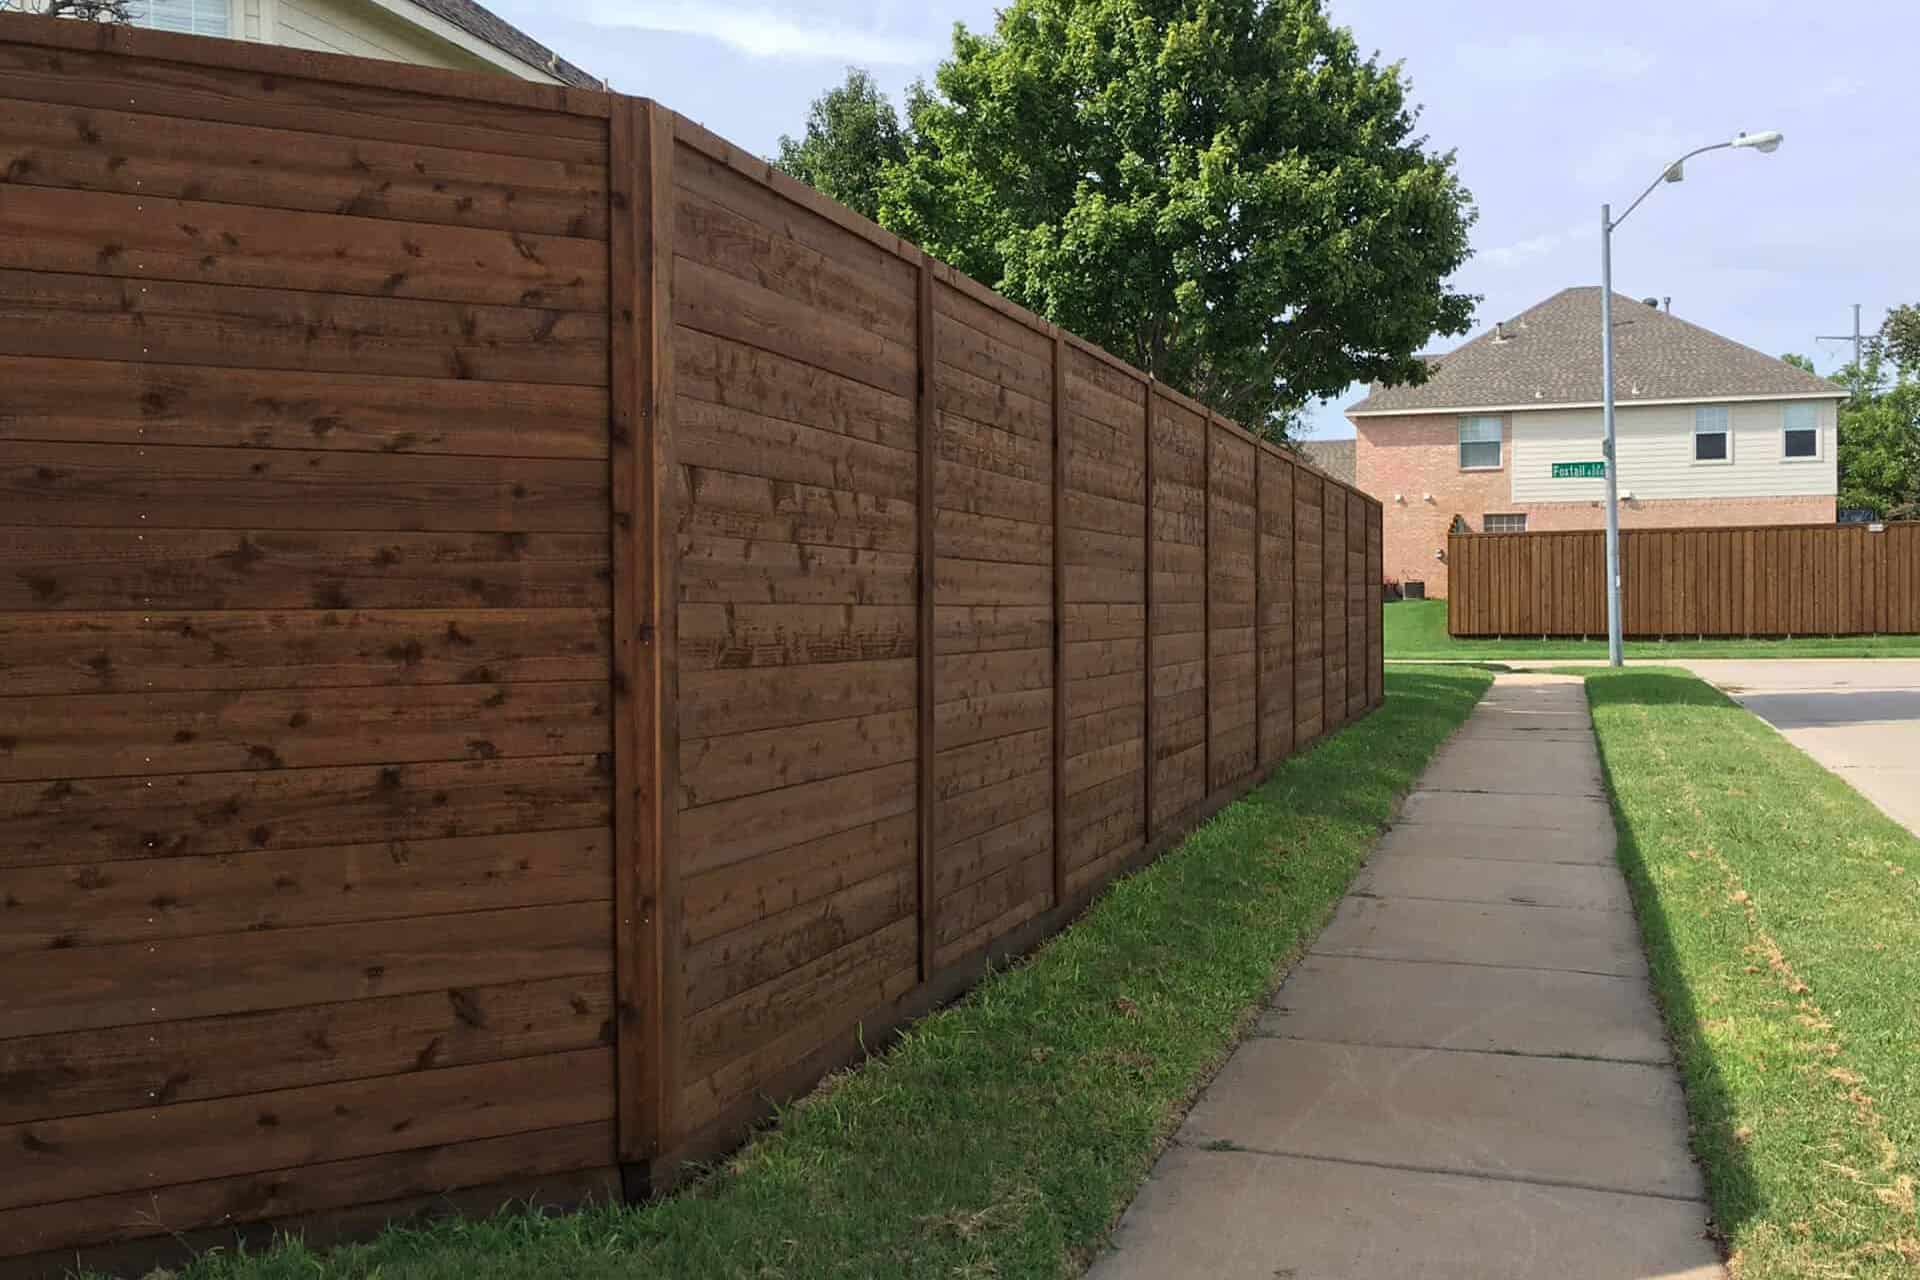 Why Use Cedar Fencing in Houston, Texas?